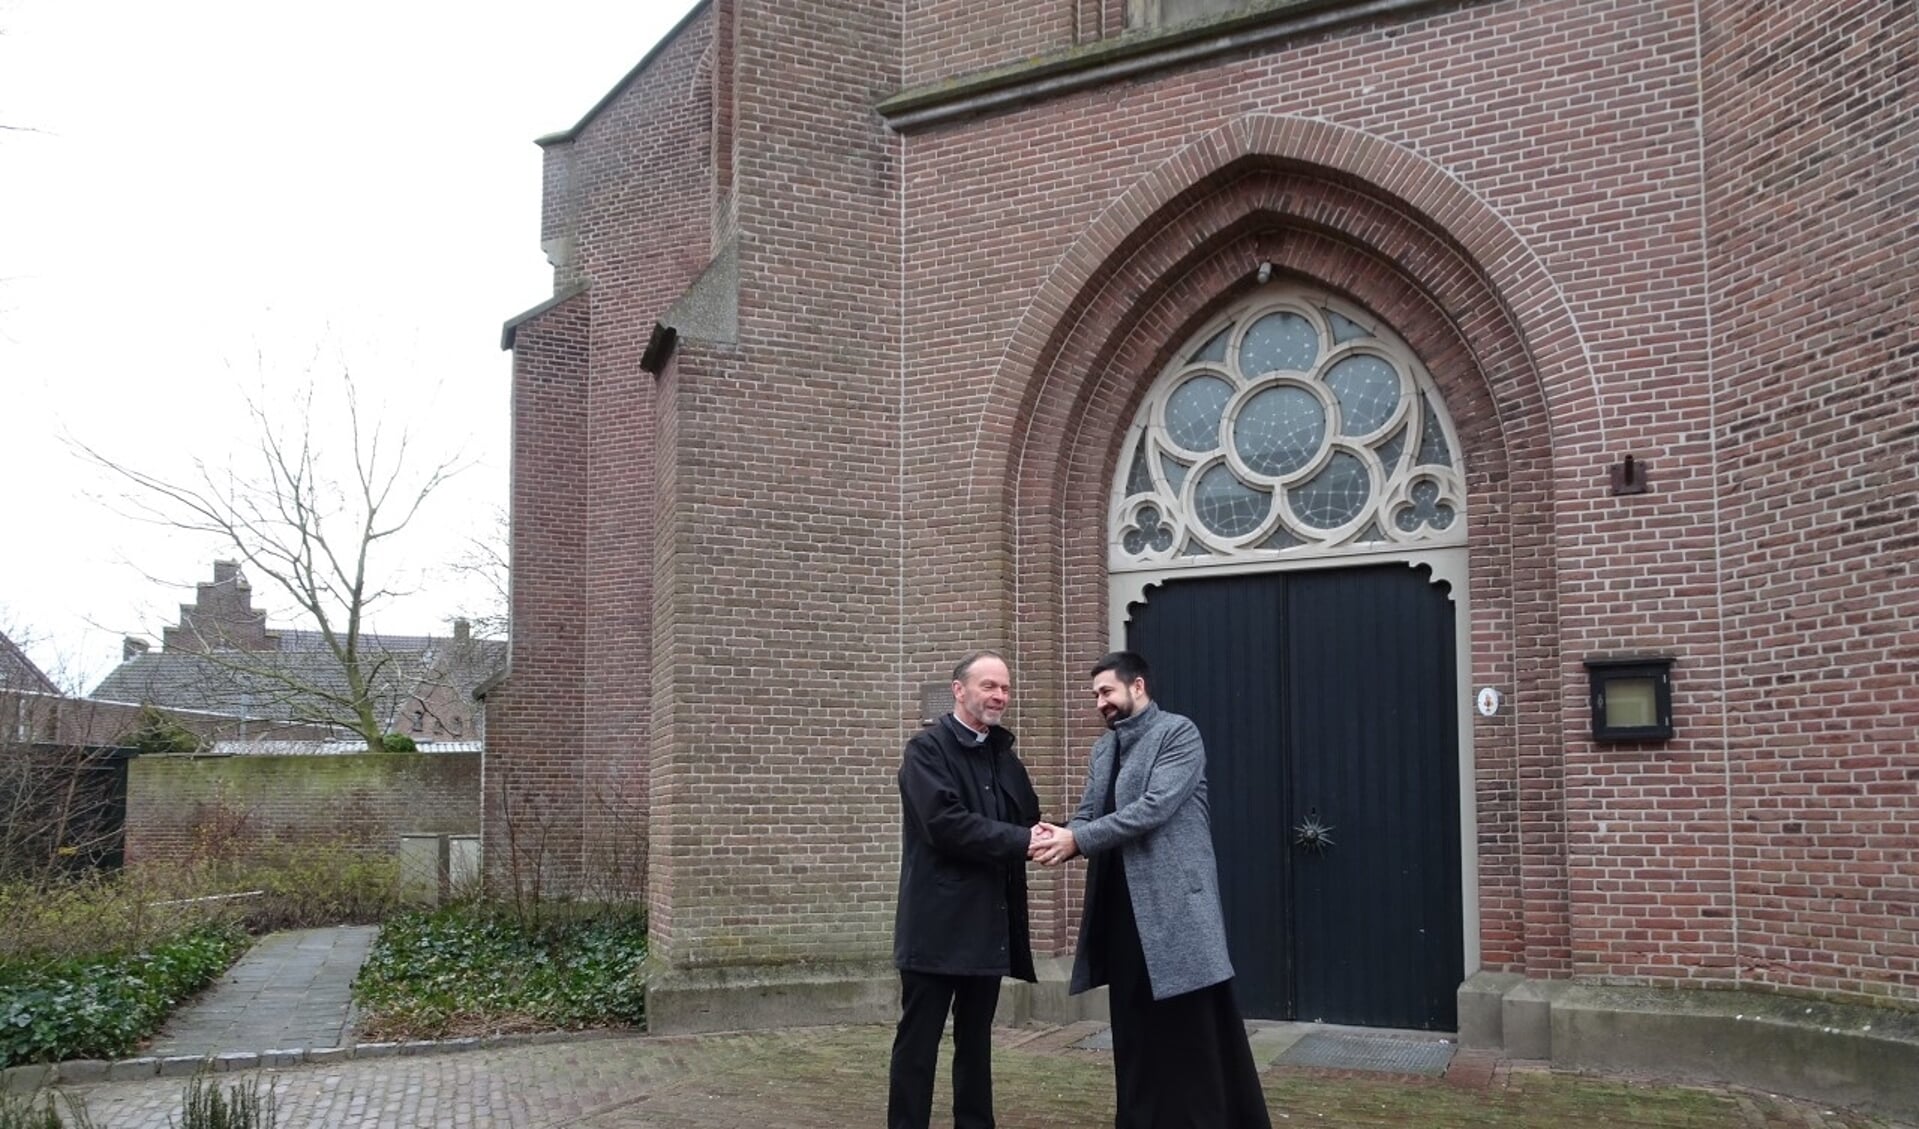 Pastoor Kerssemakers van de Willibrordus parochie en priester David Calin Pop van de Roemeens-Orthodoxe kerk.